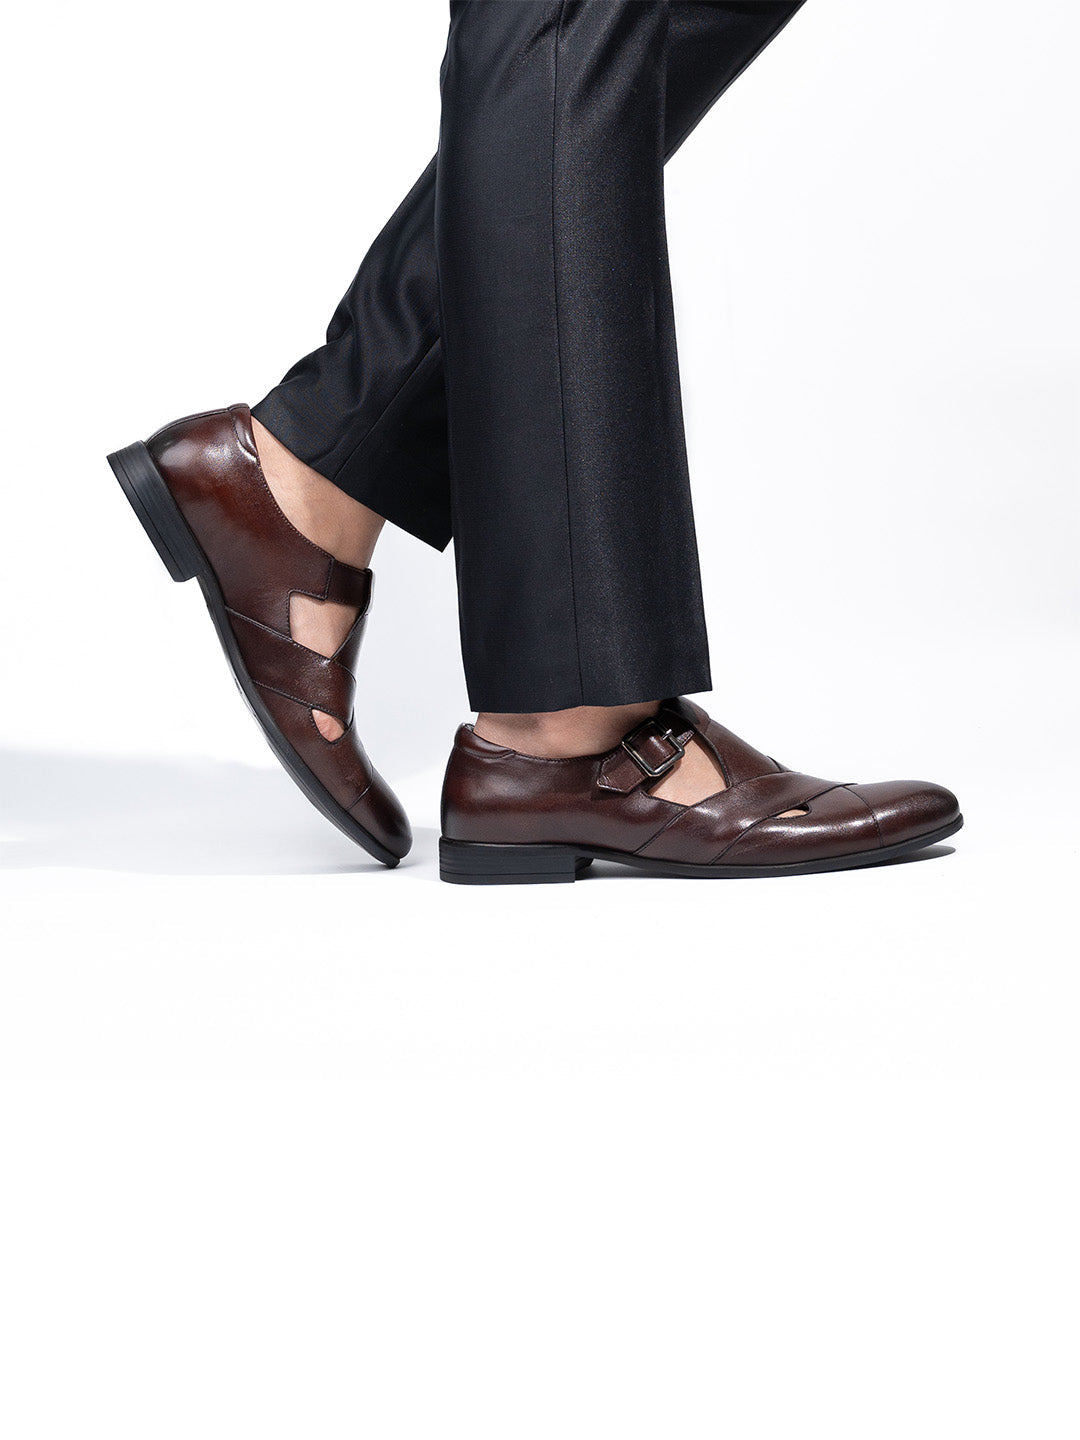 Men's Brown Leather Hook & Loop Sandals